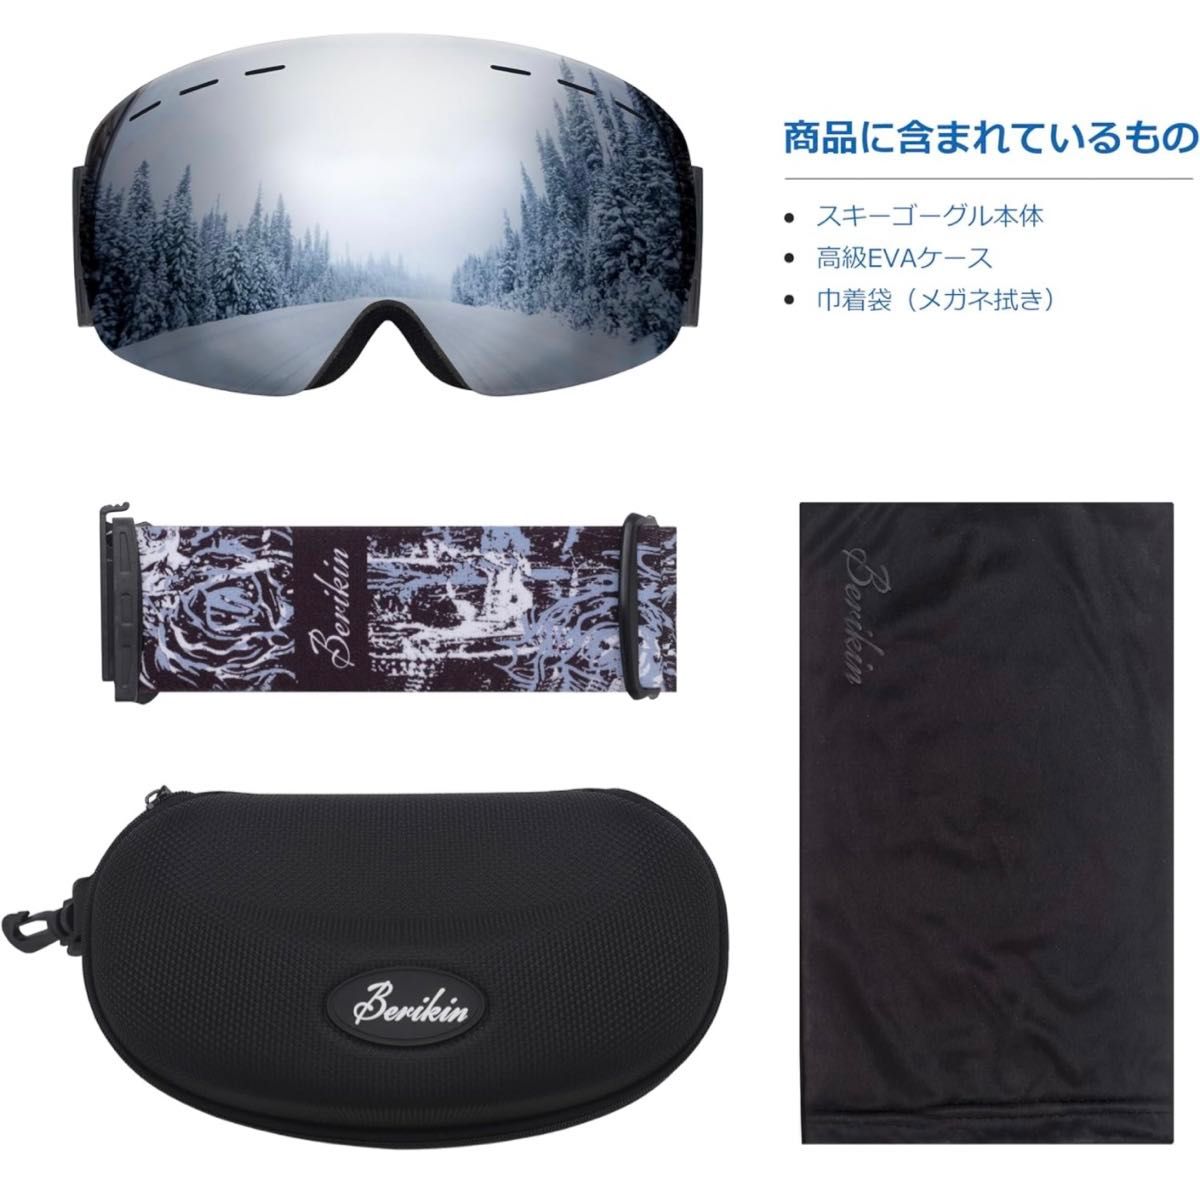 スキーゴーグル ケース付き 180°広視野球面 メガネ対応 メンズ レディース 撥水加工 曇り止め 軽量レンズ UVカット 耐衝撃